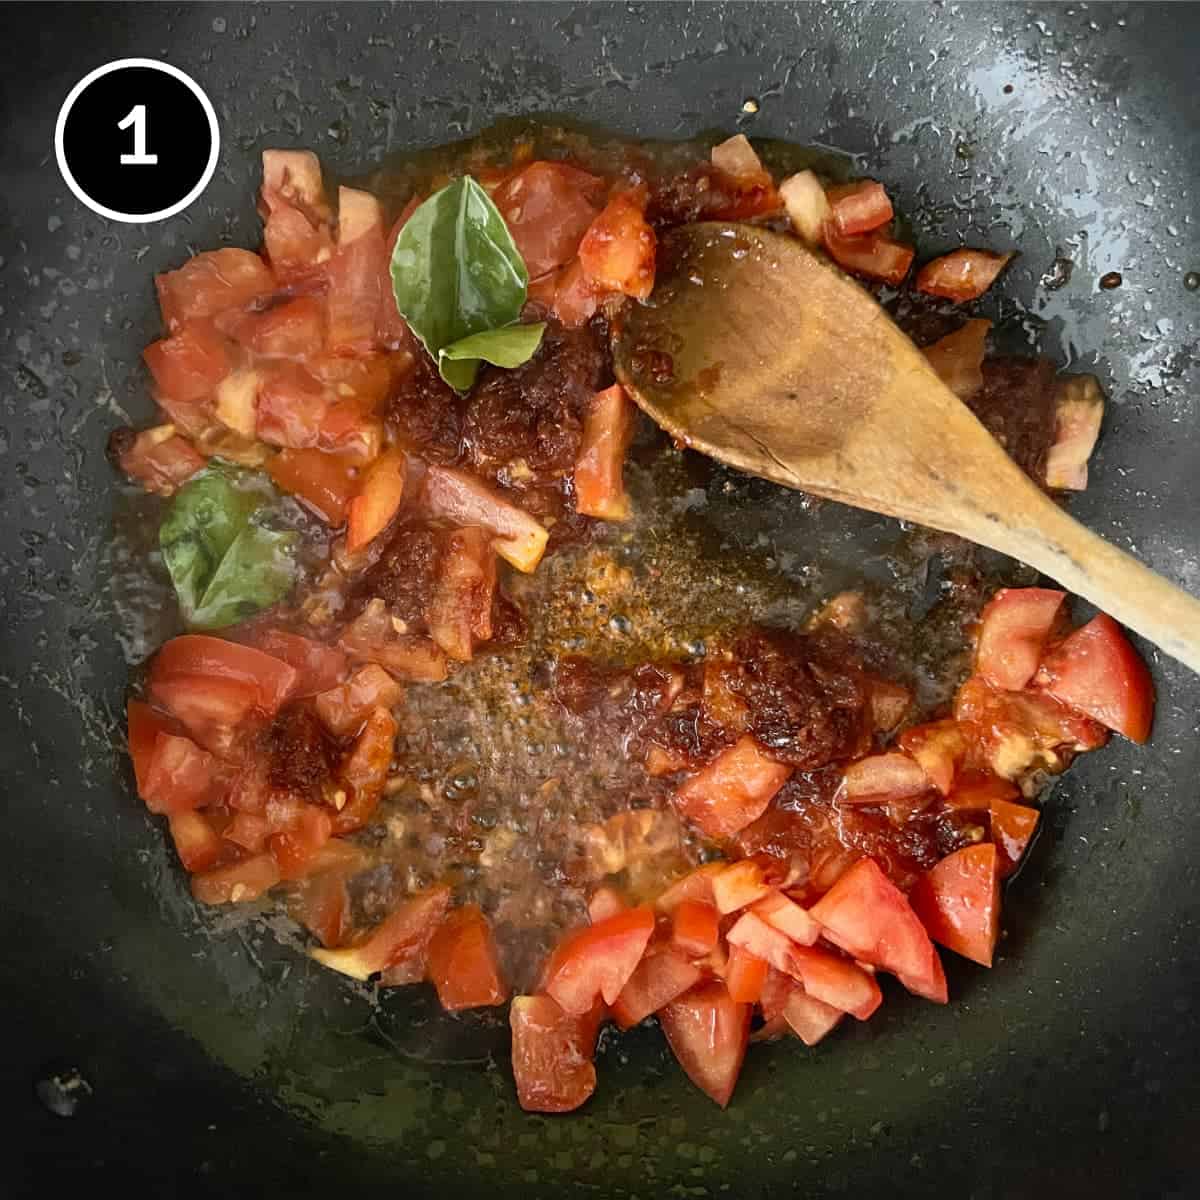 Stir frying tomatoes, sambal sauce and lime leaves for Sambal Udang (Sambal Prawns)